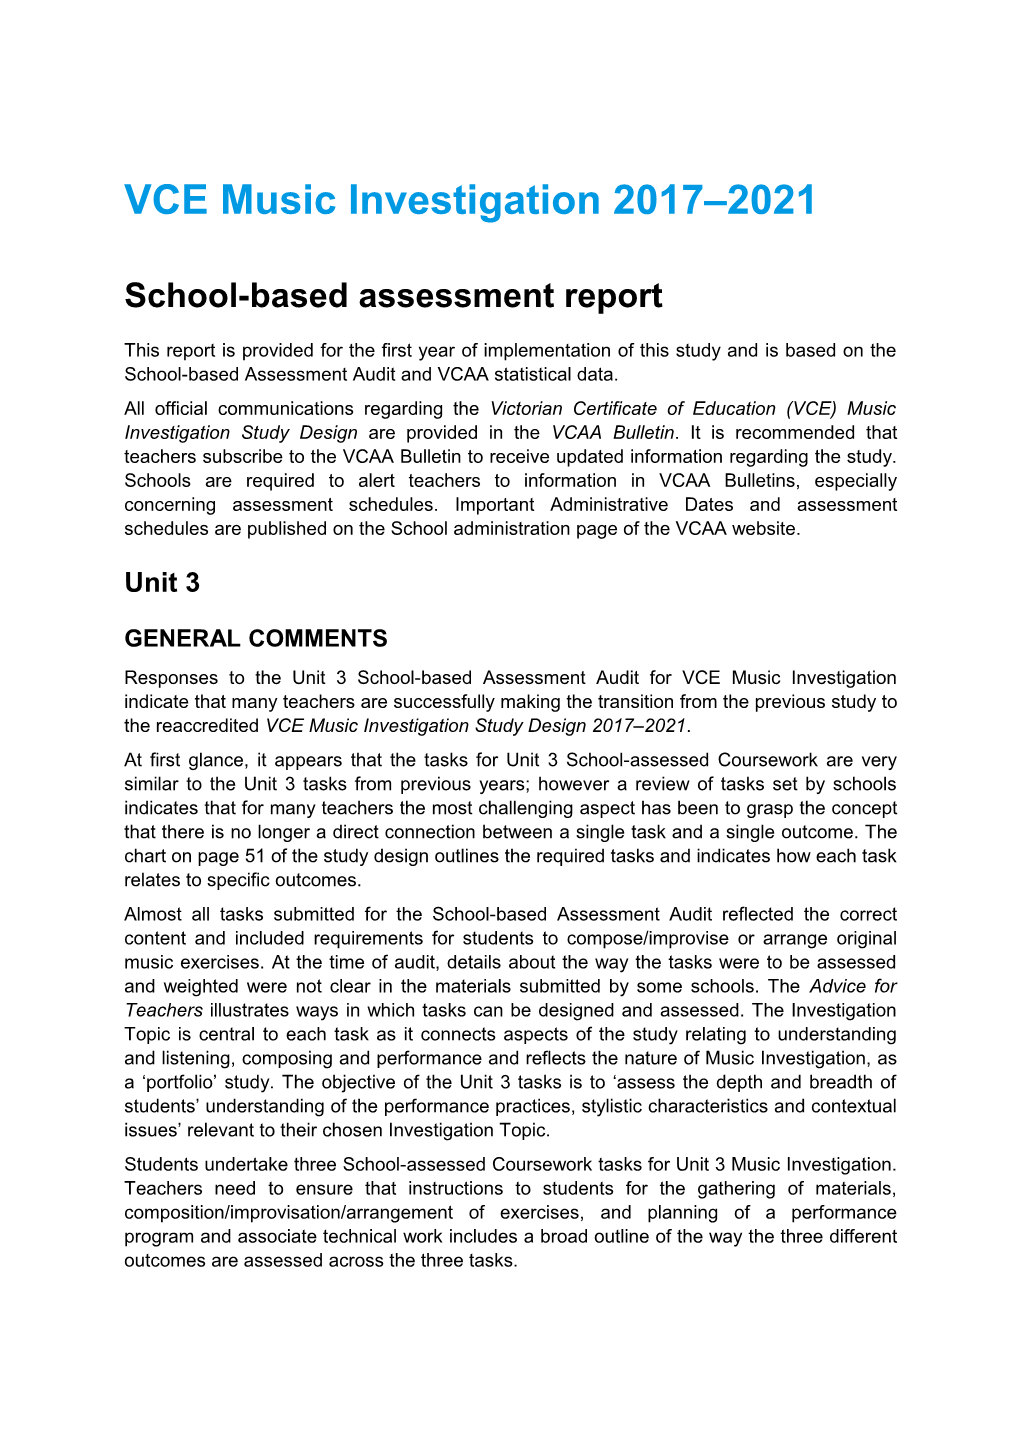 School-Based Assessment Report